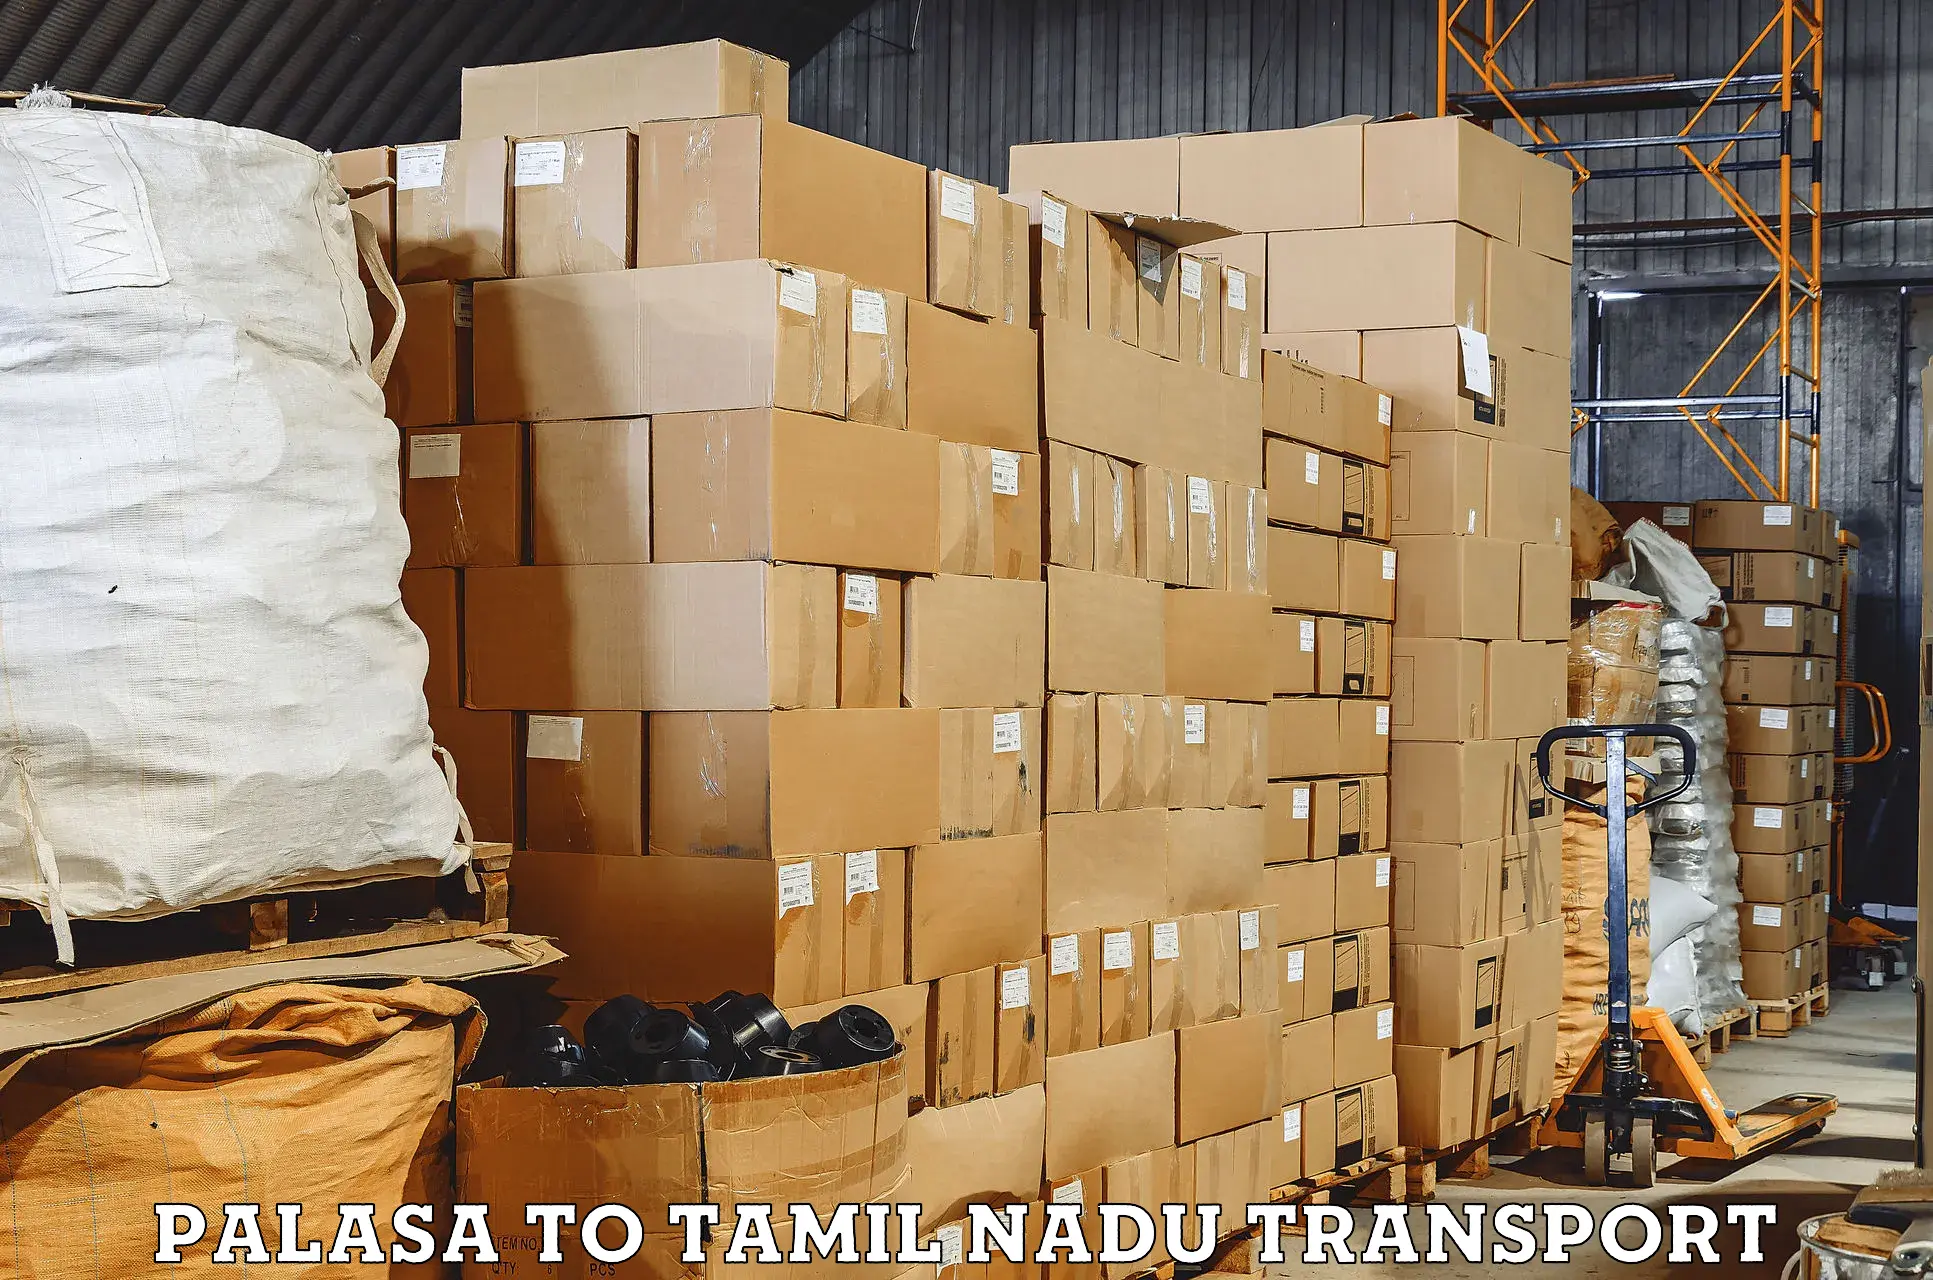 Furniture transport service in Palasa to Eraiyur